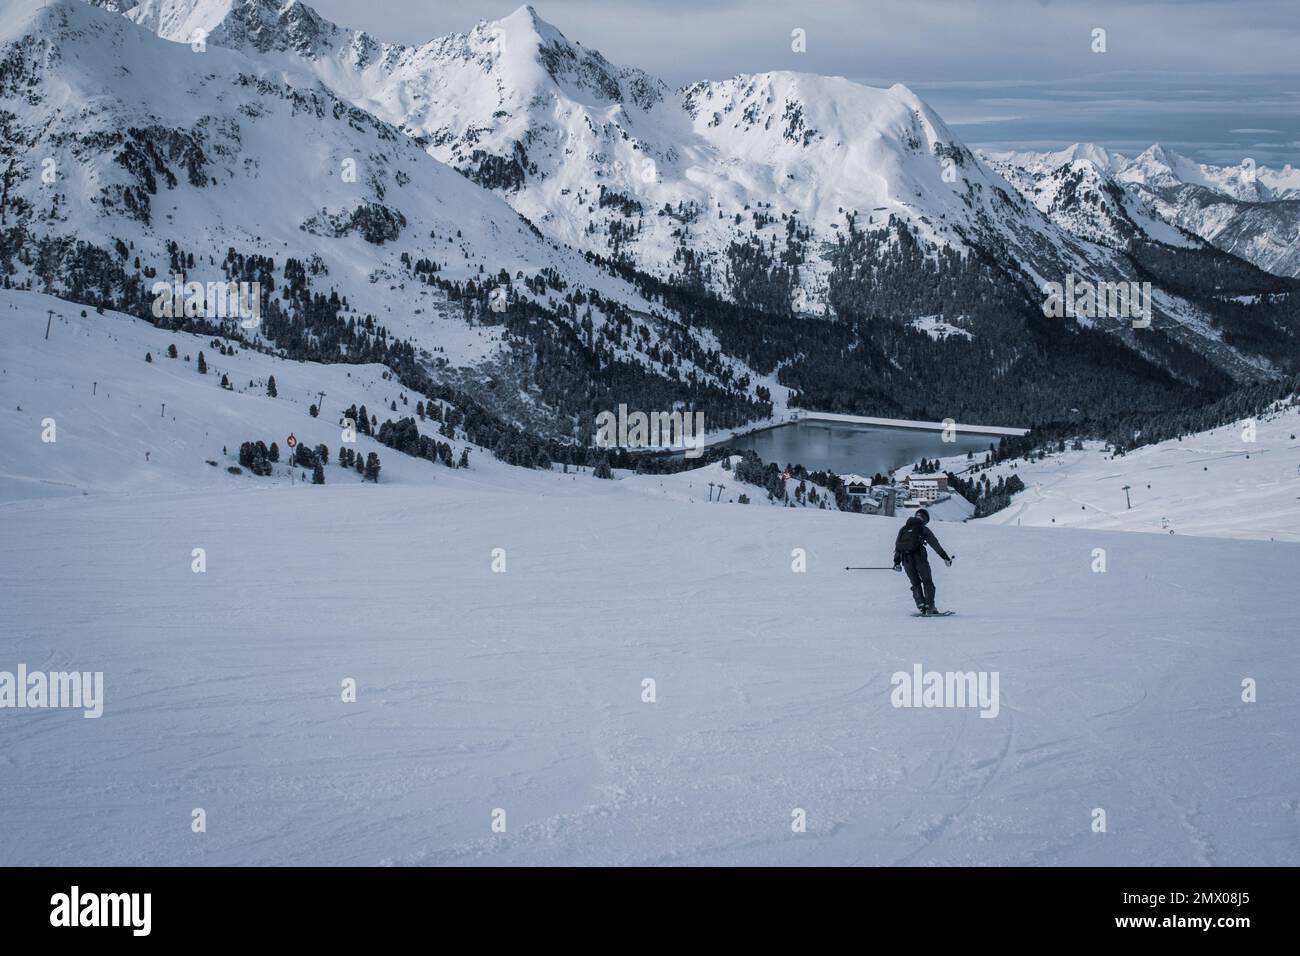 Ski in winter season, mountains and ski touring on the top of snowy mountains in Tirol, Austria. Stock Photo